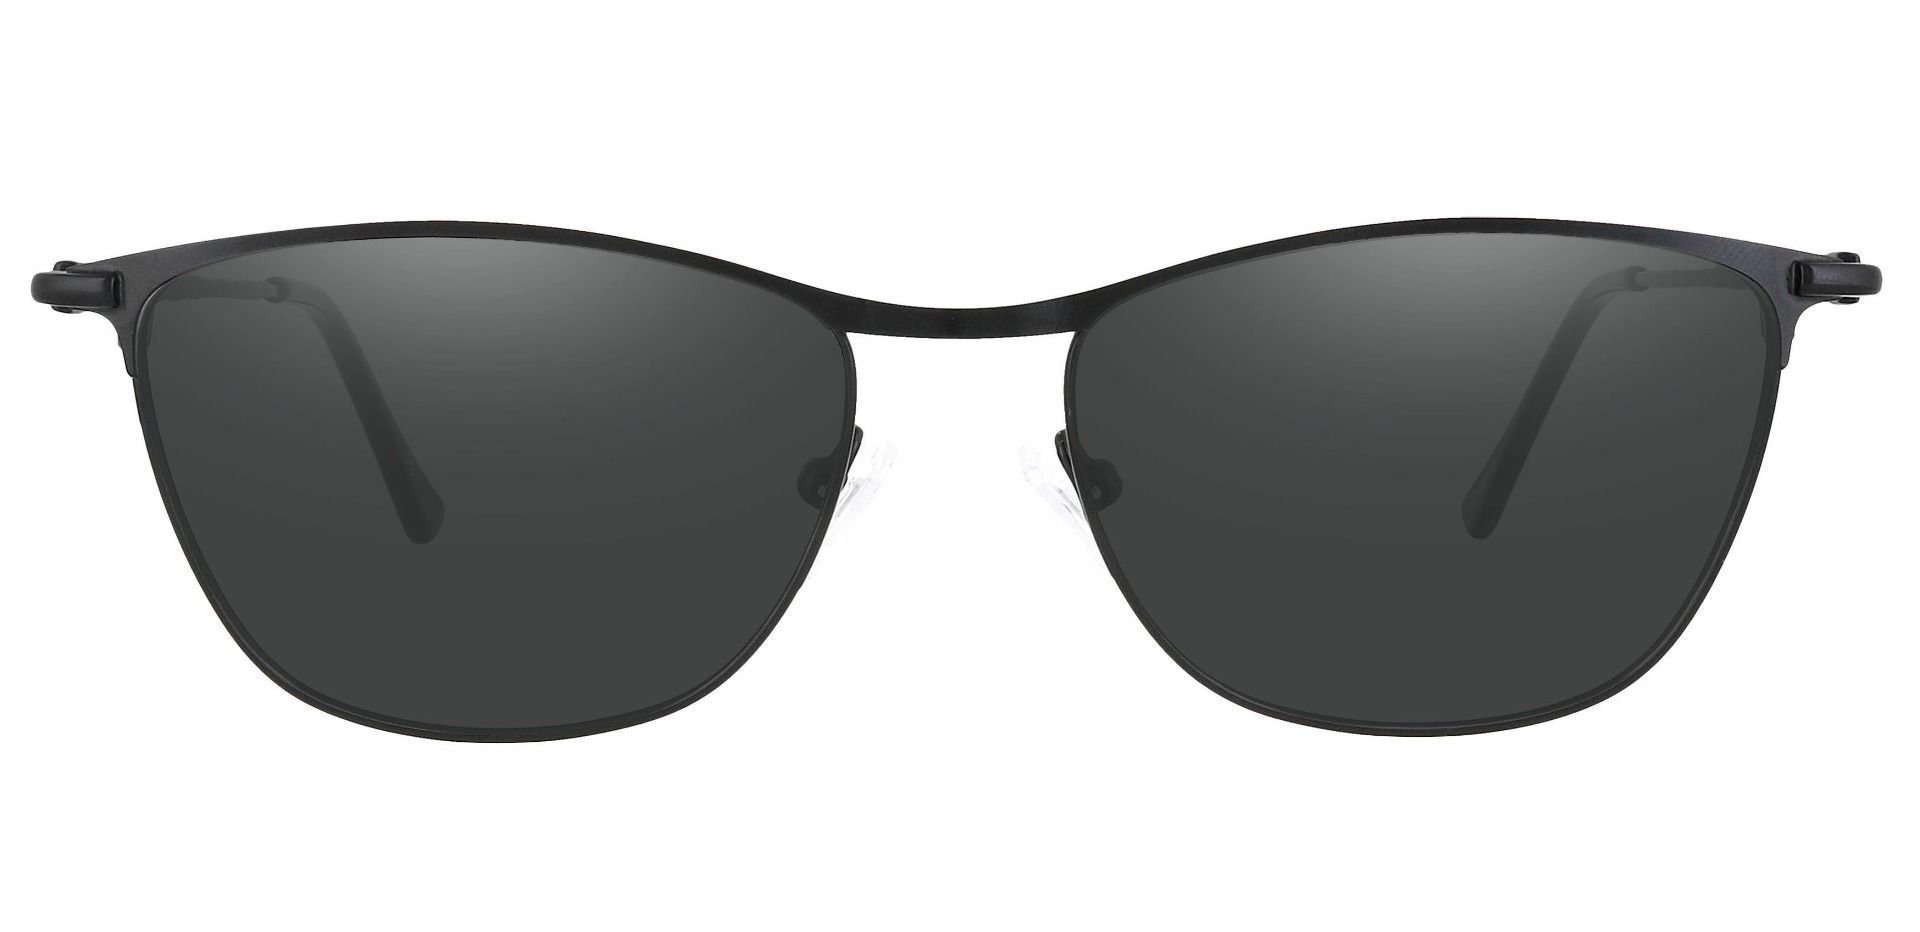 Andrea Cat Eye Progressive Sunglasses - Black Frame With Gray Lenses